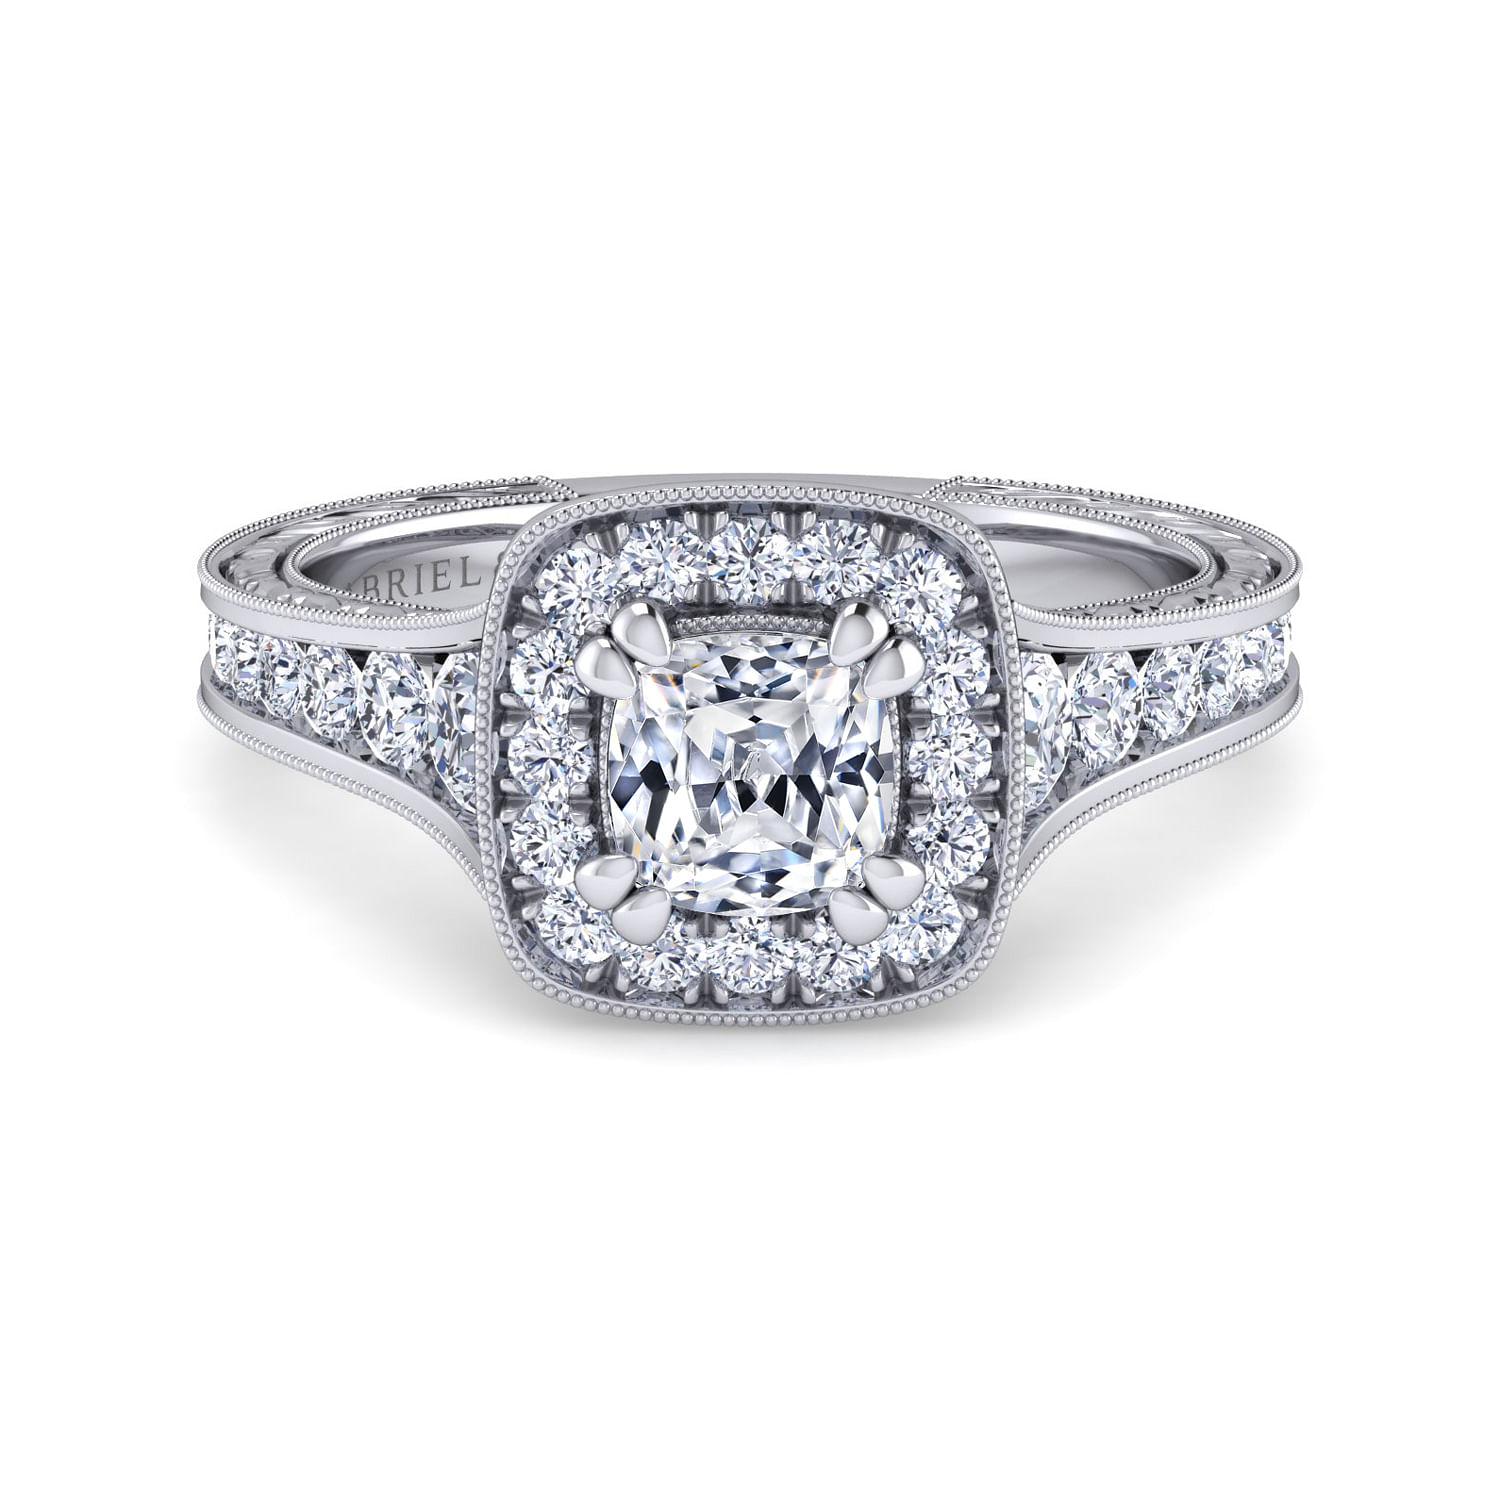 Elaine - Vintage Inspired 14K White Gold Cushion Halo Diamond Engagement Ring